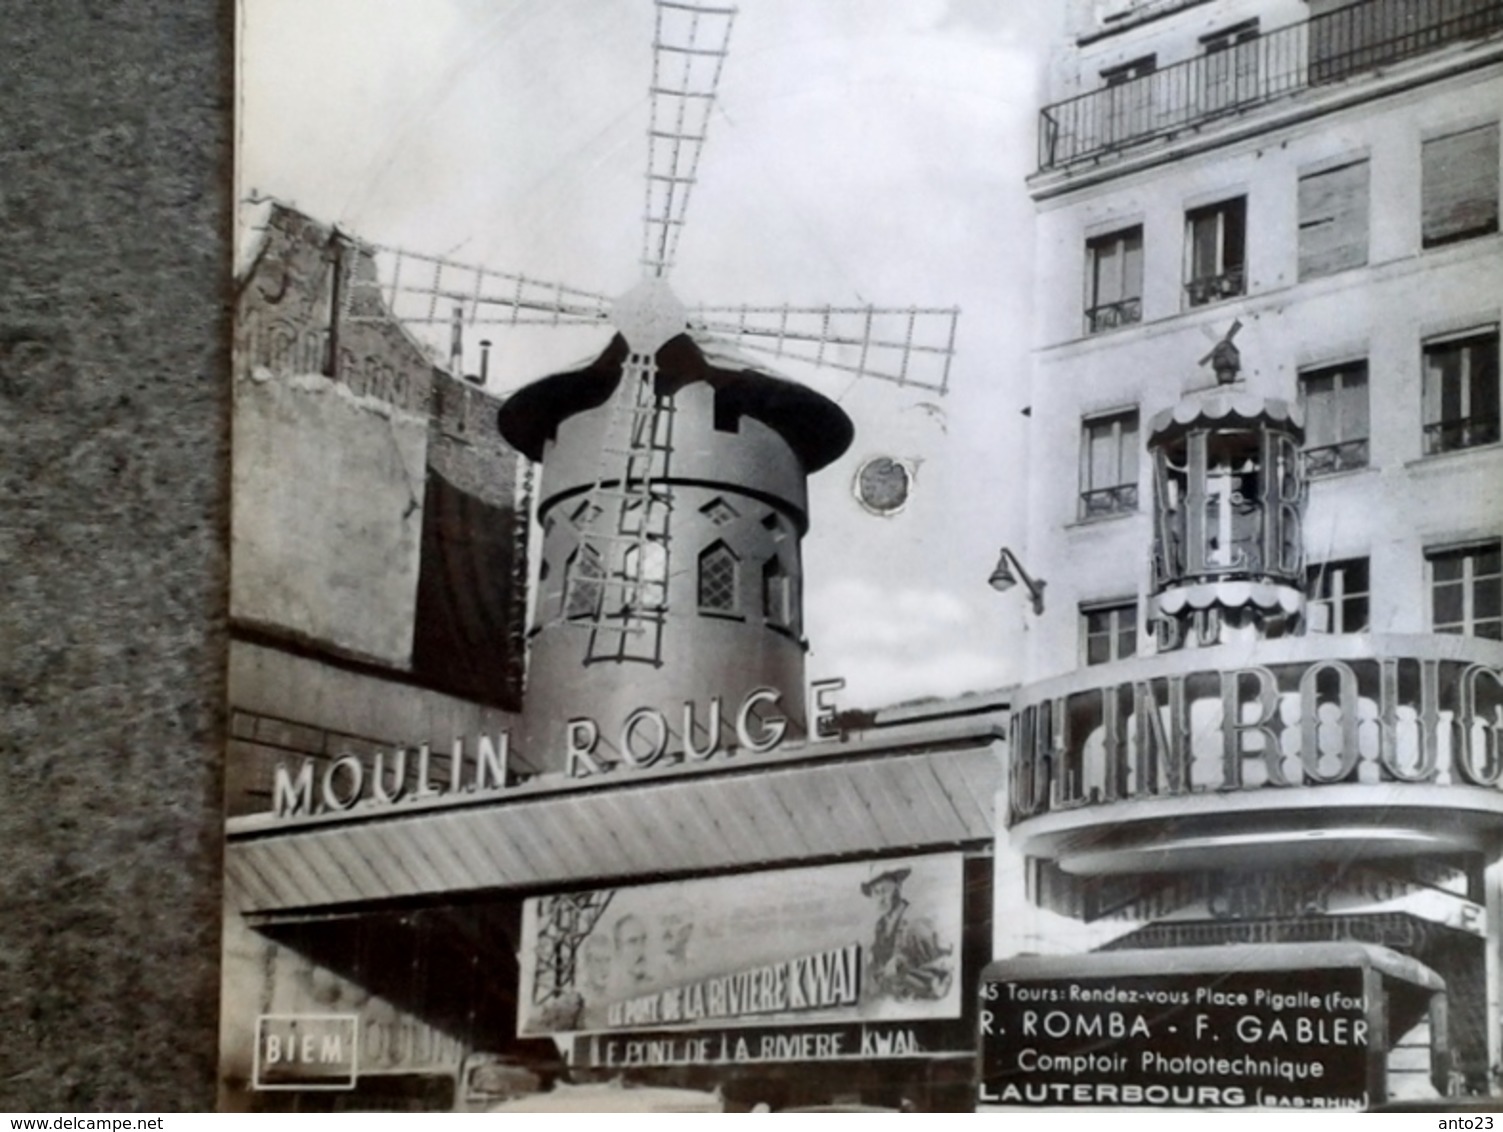 Paris Moulin Rouge Carte Postale Musicale Disque 45 Tours Musique Rendez-vous Place Pigalle (fox) Romba Gabler - Autres Monuments, édifices